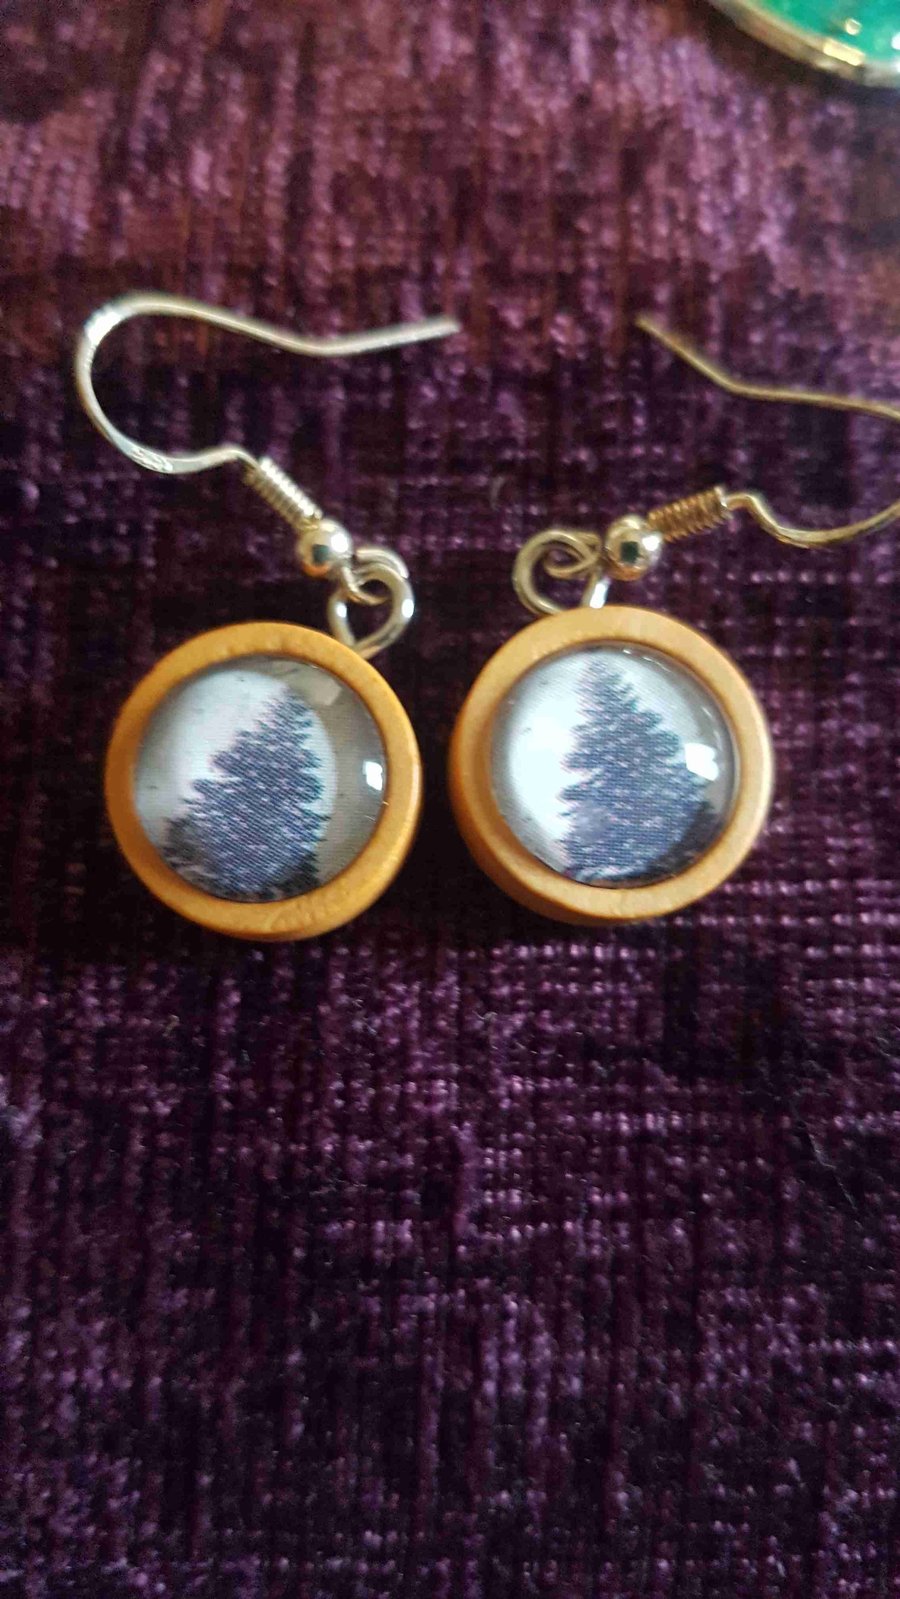  Tiny Xmas tree design earrings